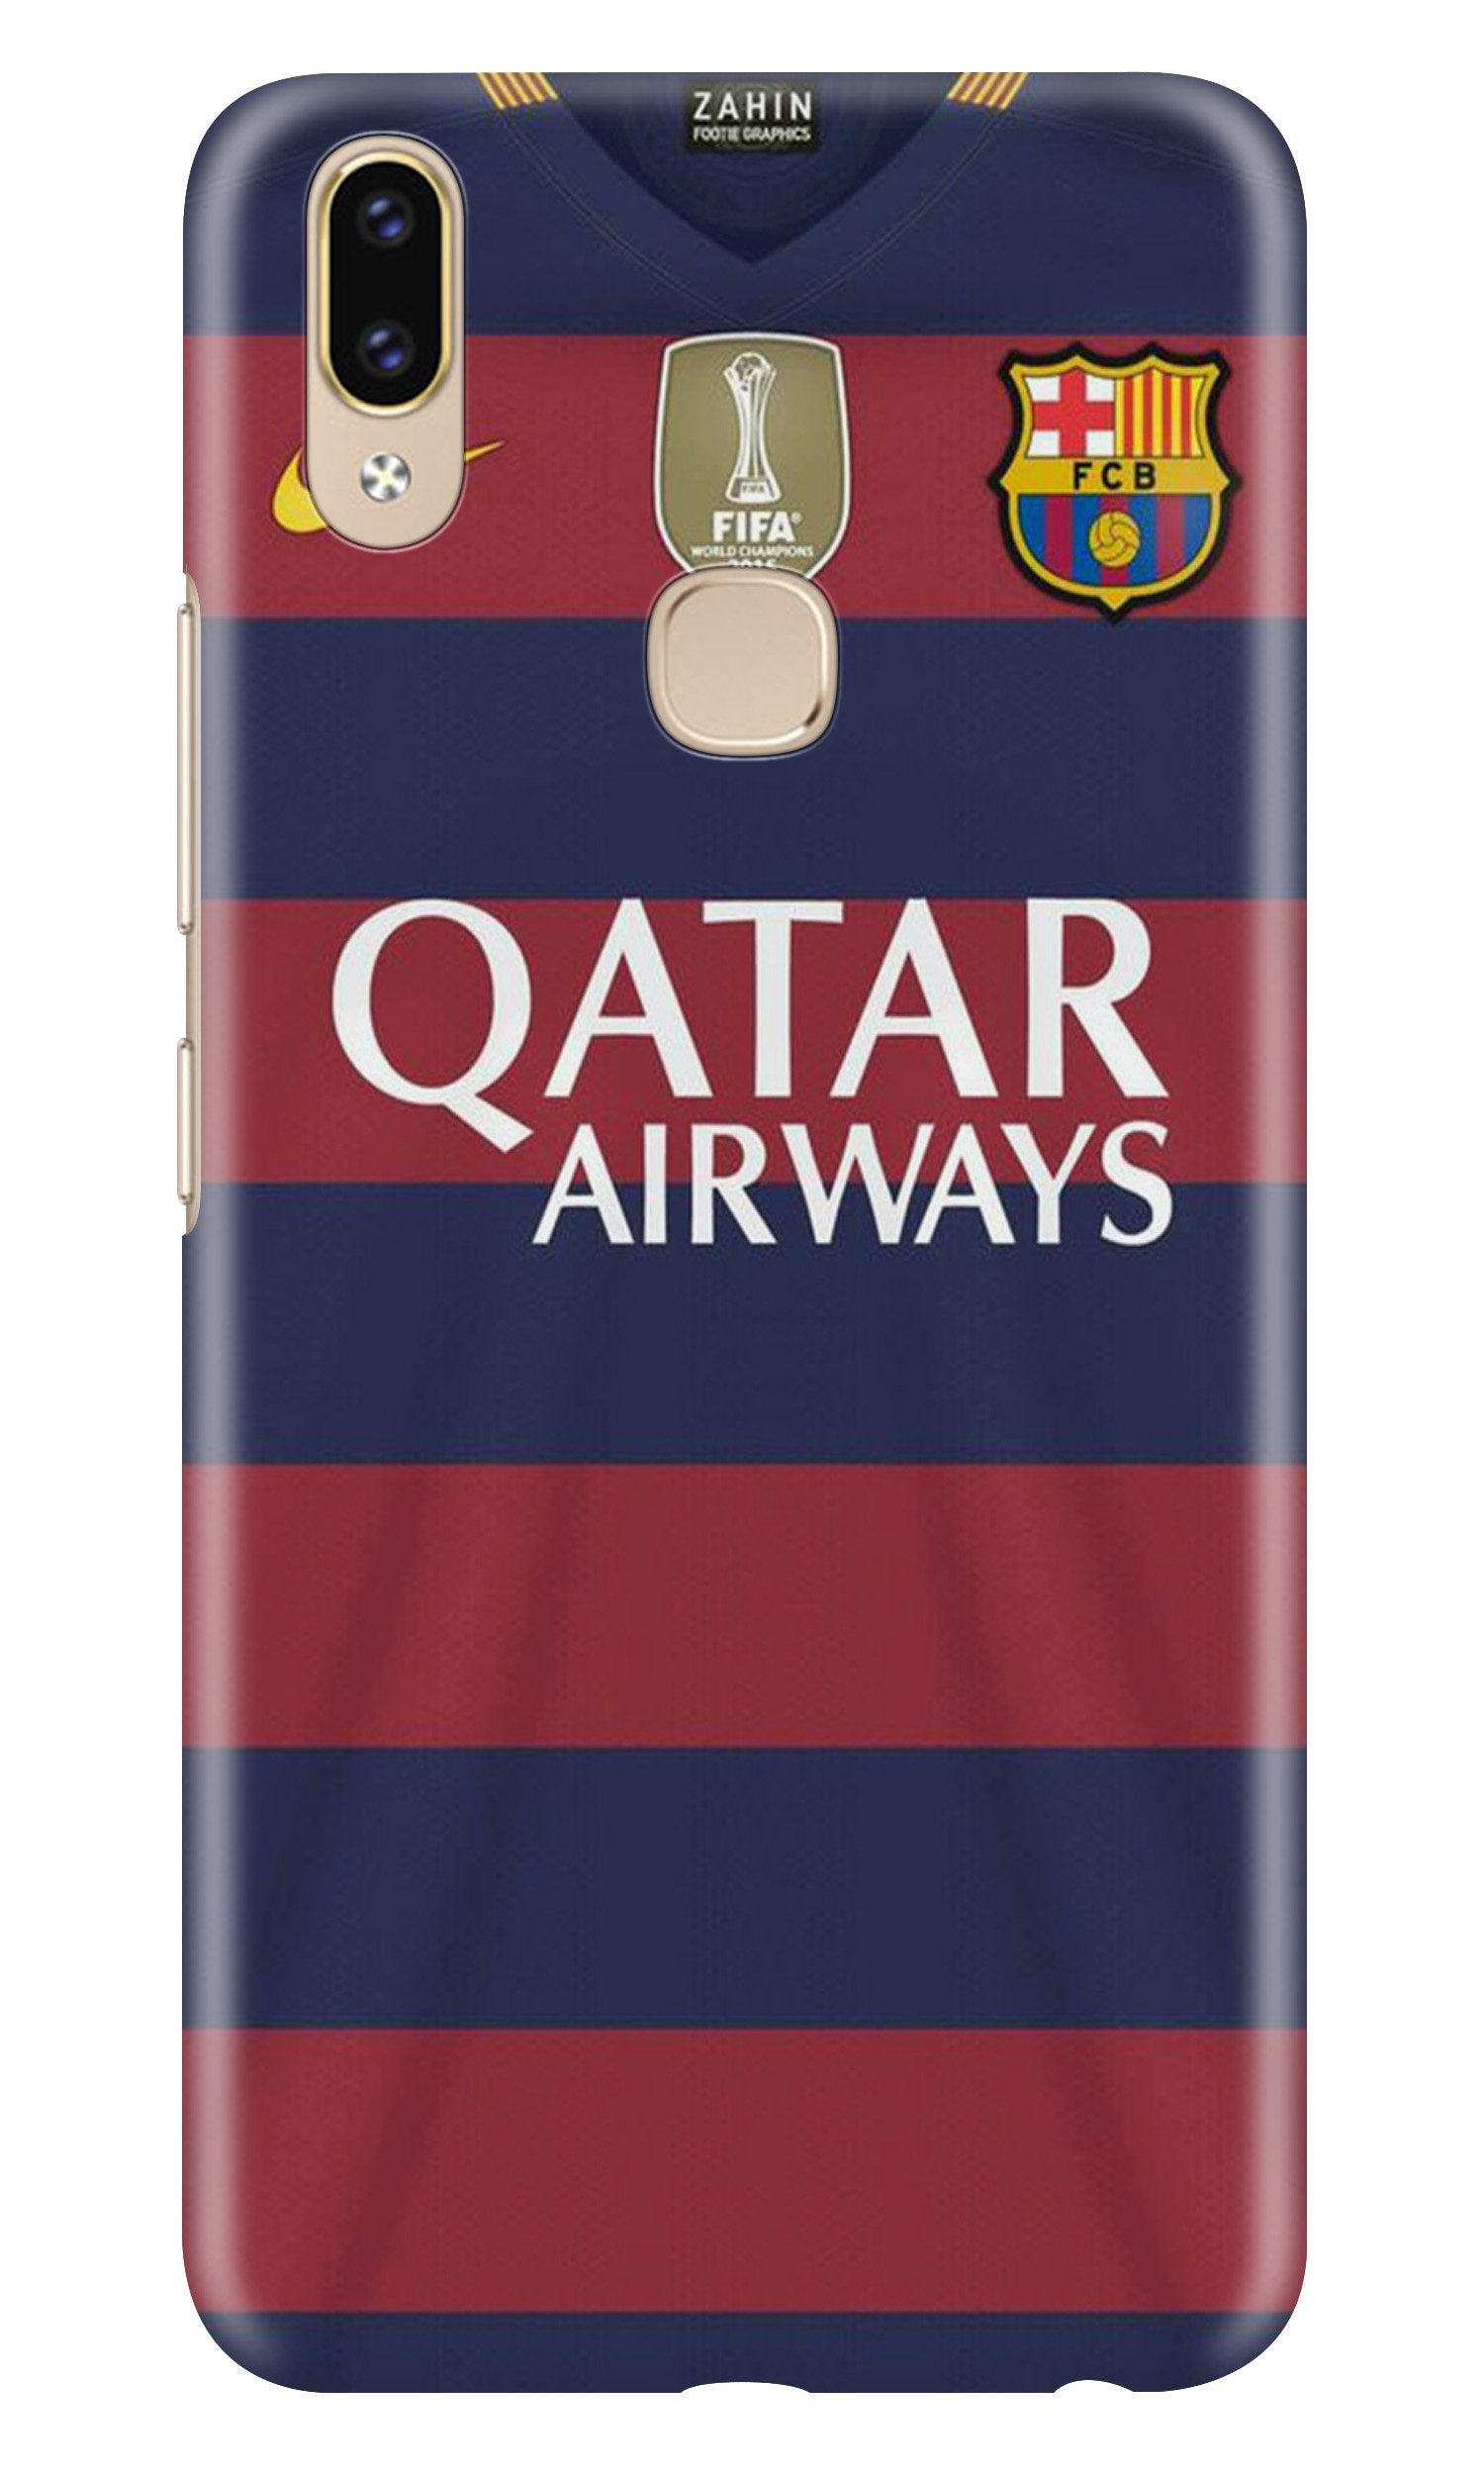 Qatar Airways Case for Zenfone 5z(Design - 160)